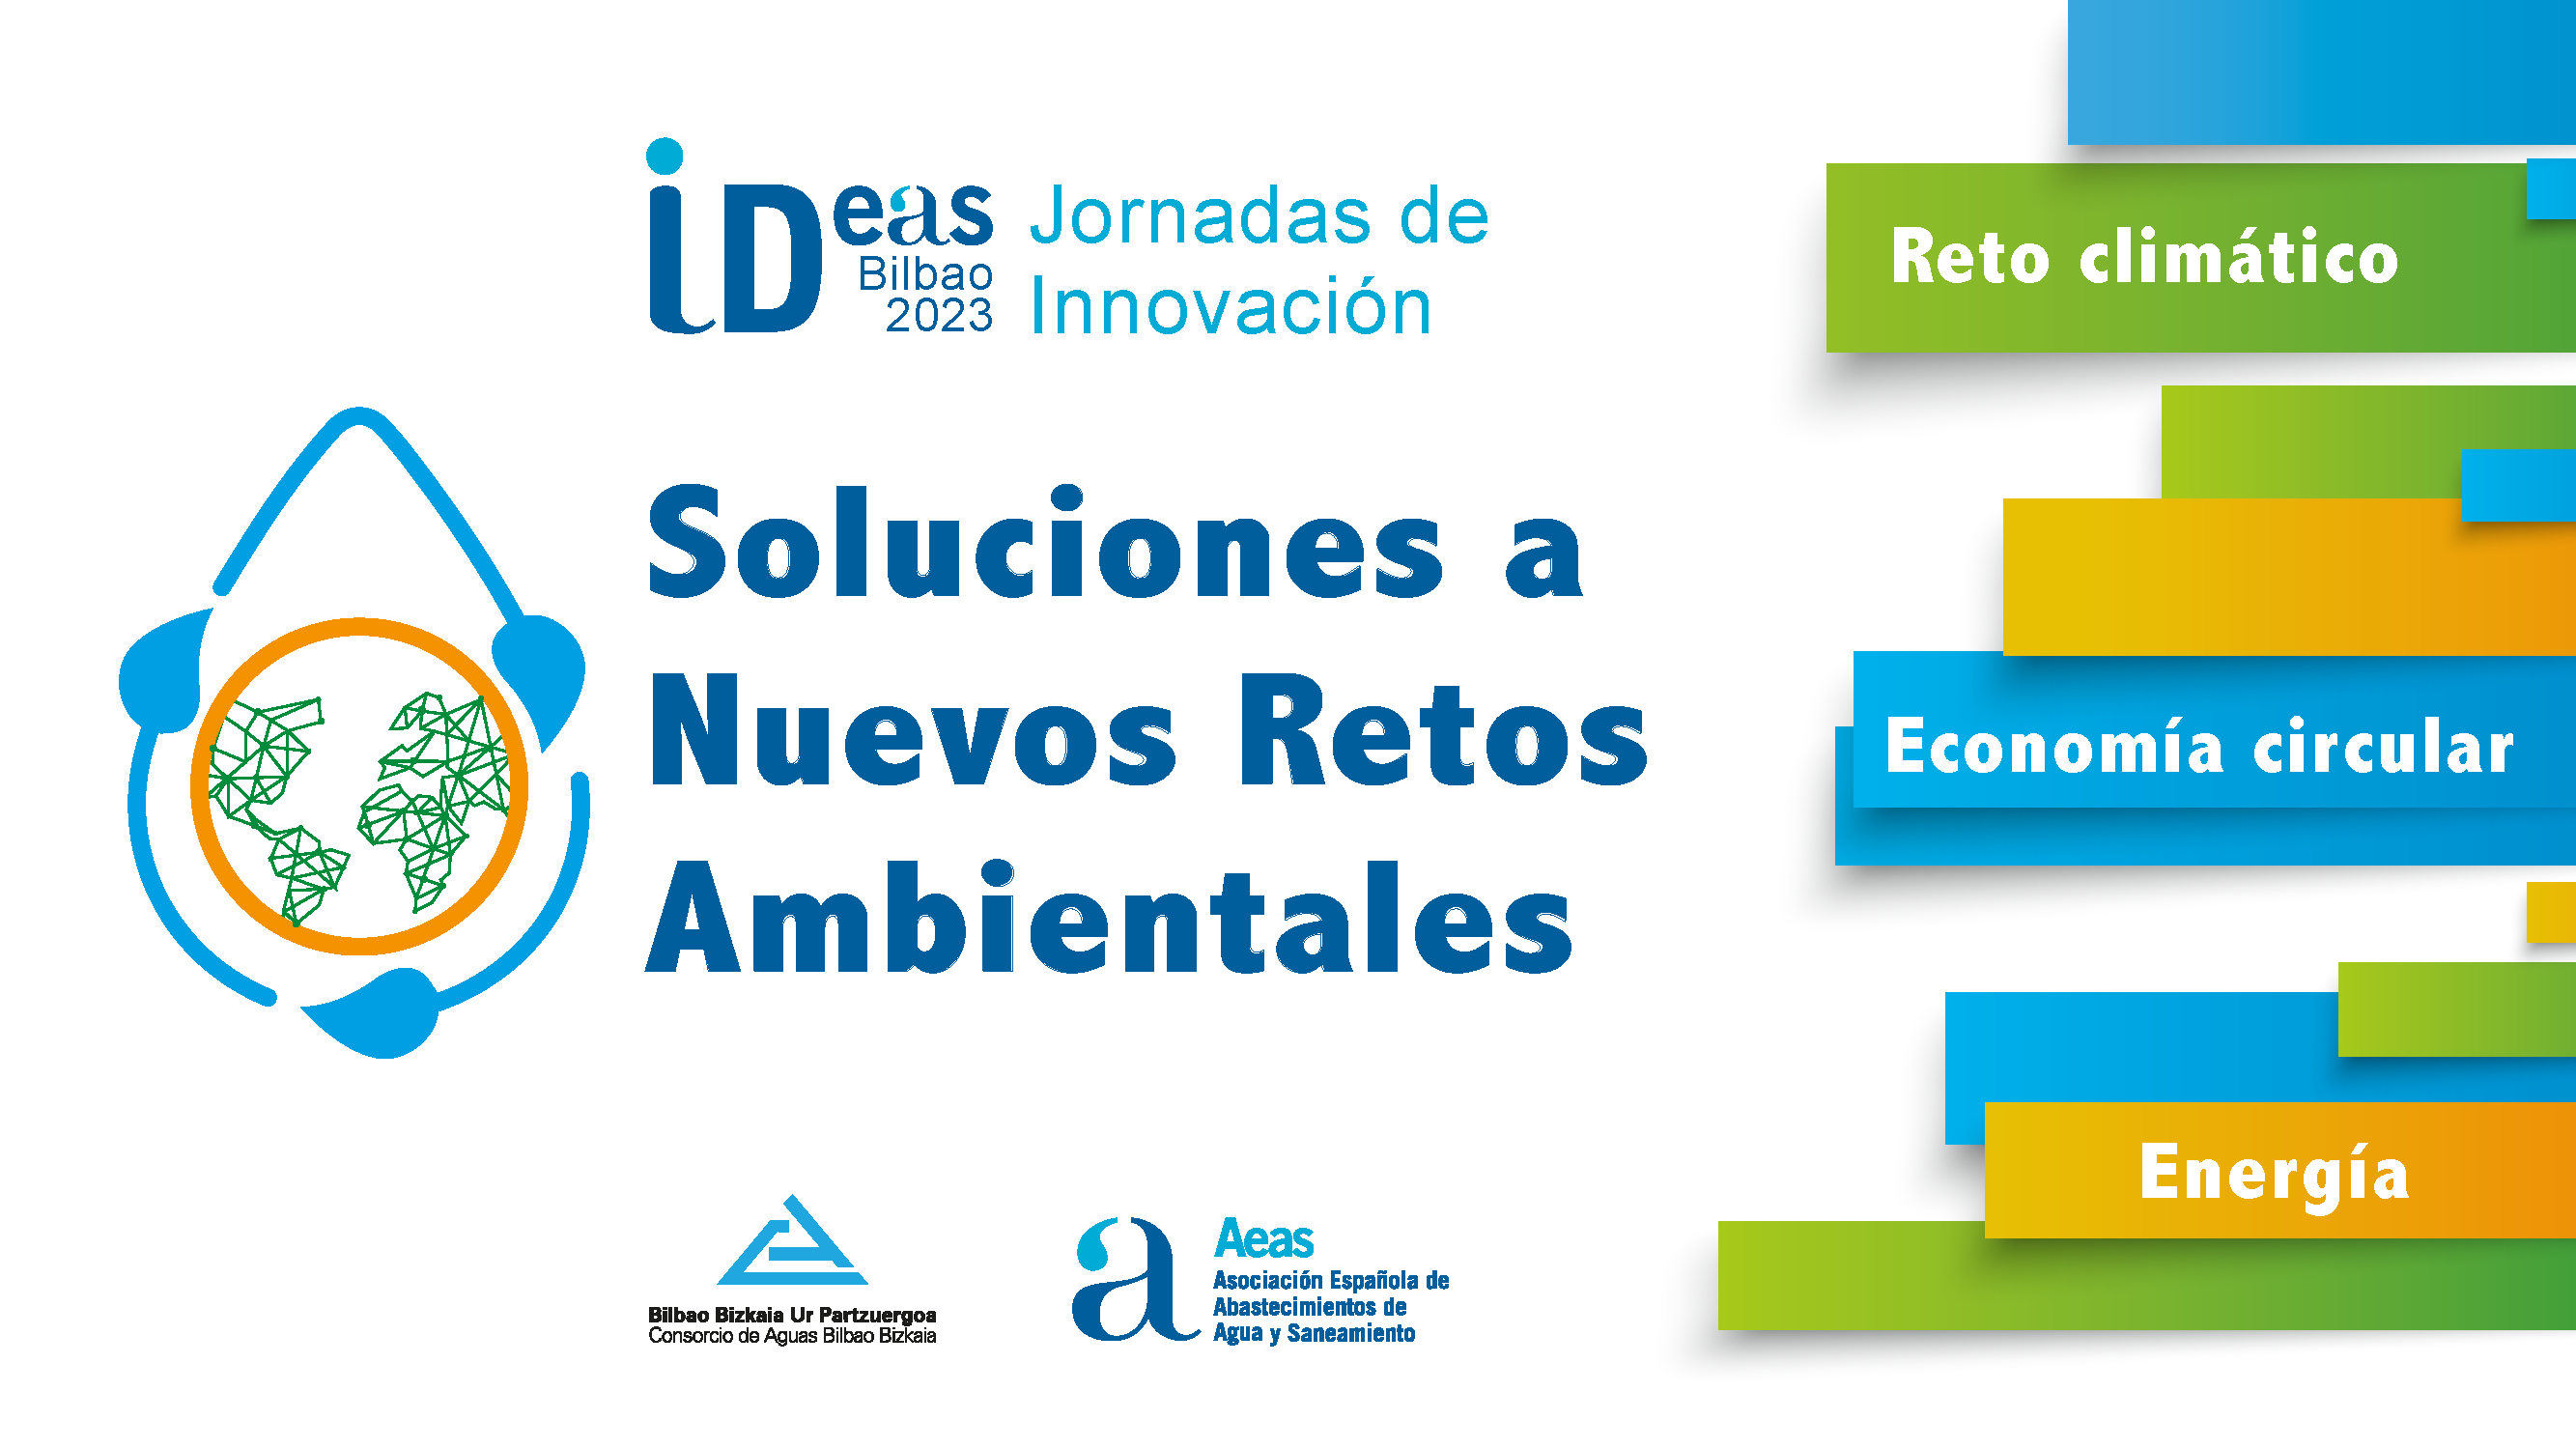 AEAS celebrará en Bilbao una nueva edición de las Jornadas IDeas sobre innovación bajo el lema “Soluciones a nuevos retos ambientales”